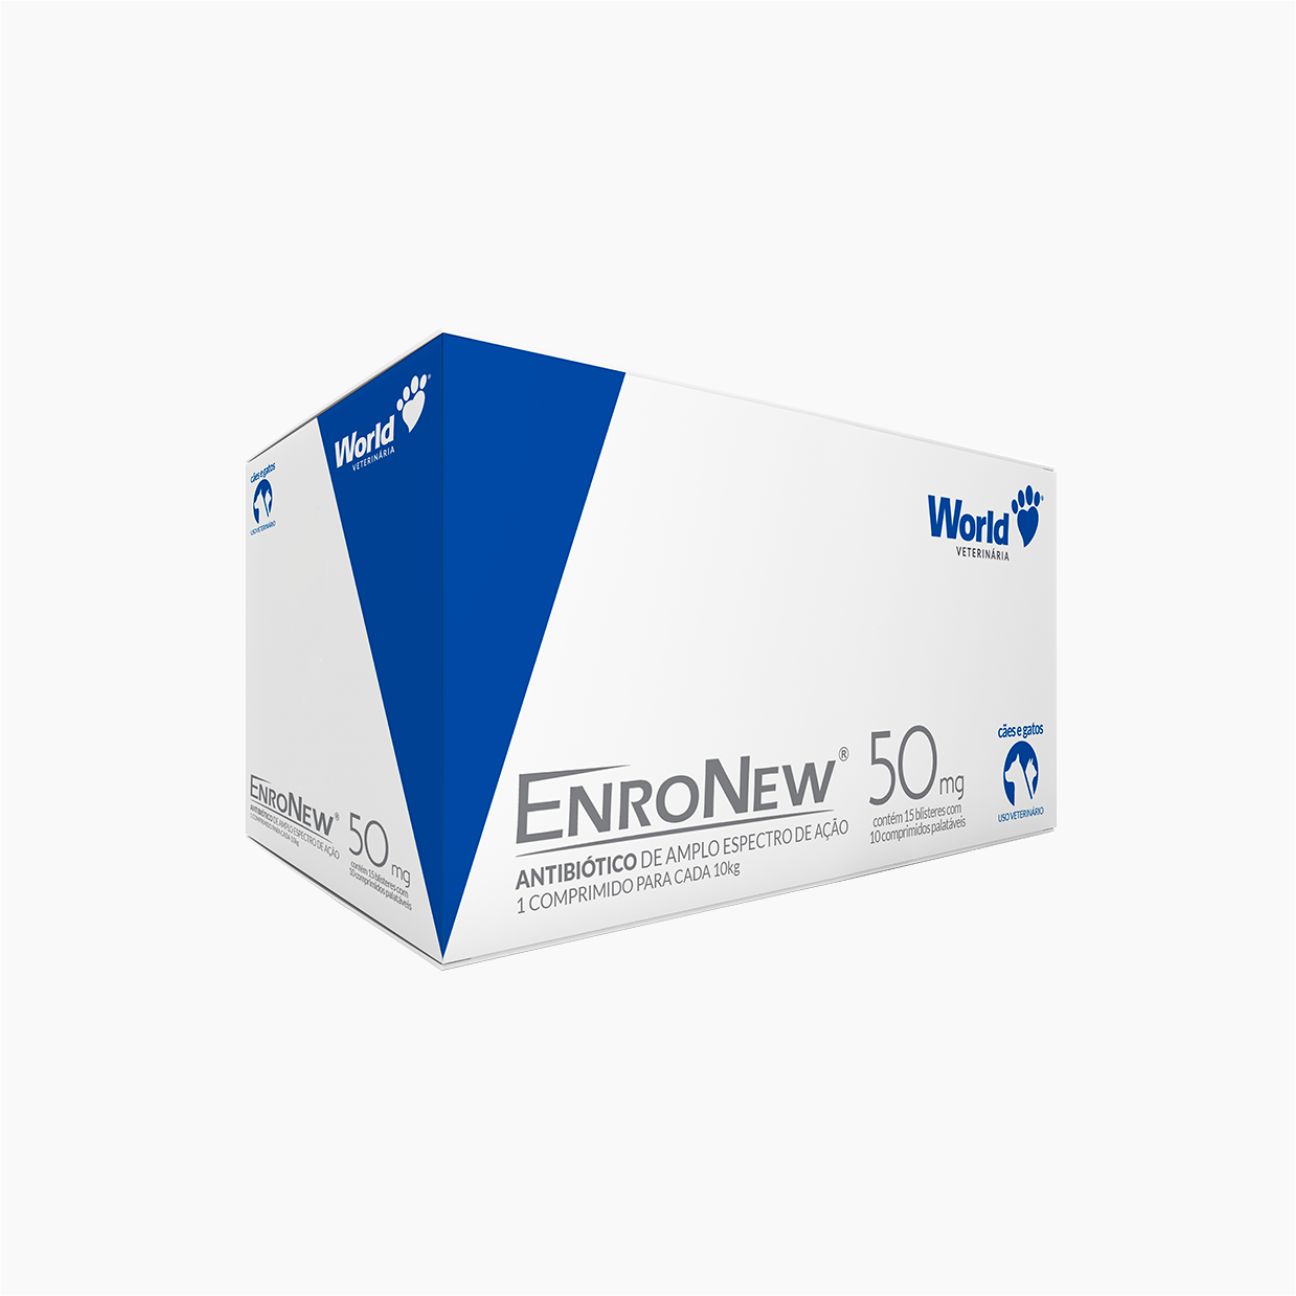 EnroNew 50 mg